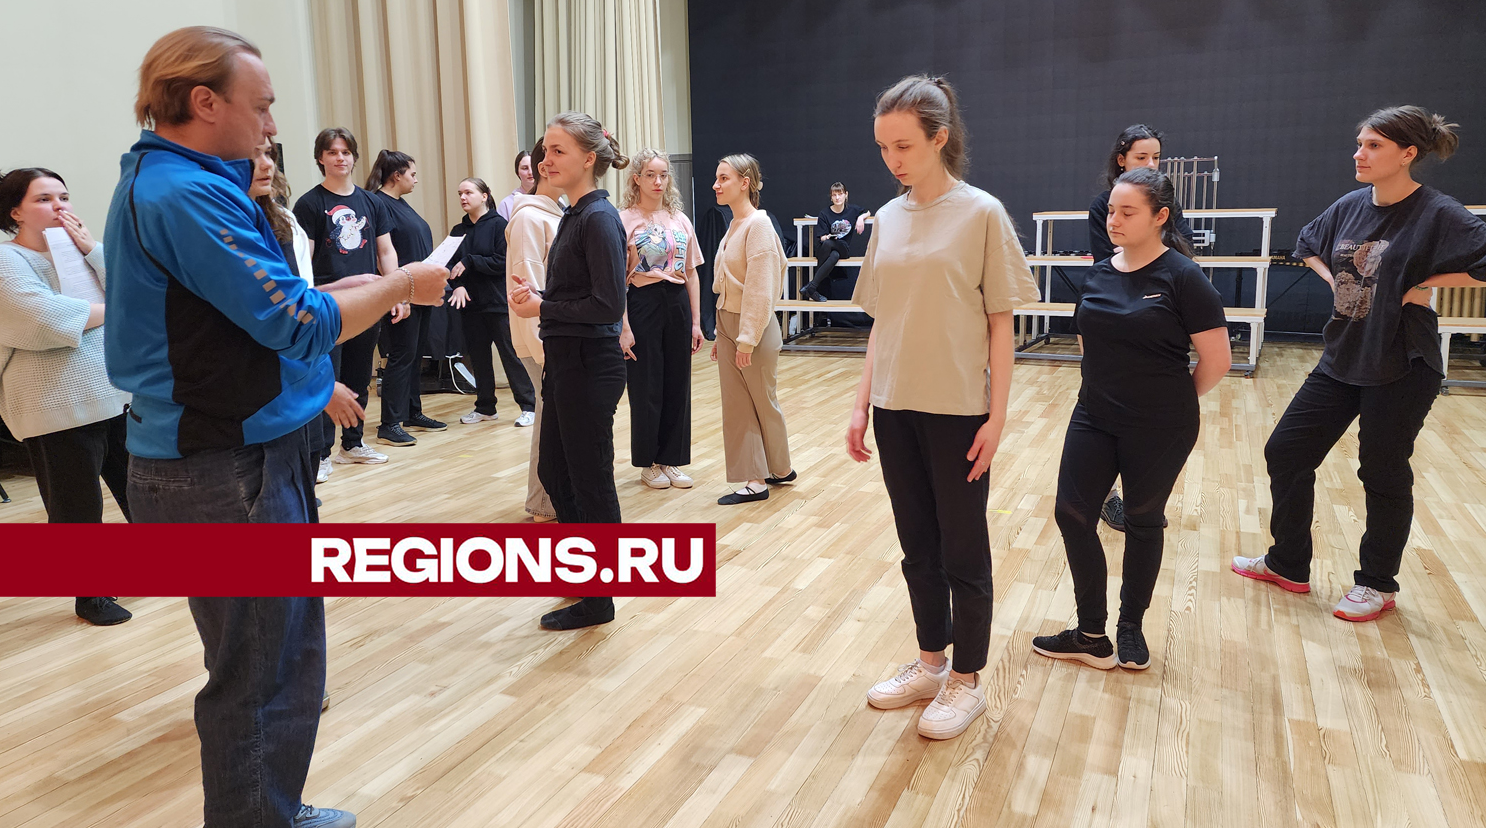 Оперу «Русалка» представят студенты музколледжа в Пушкино к юбилею великого русского поэта